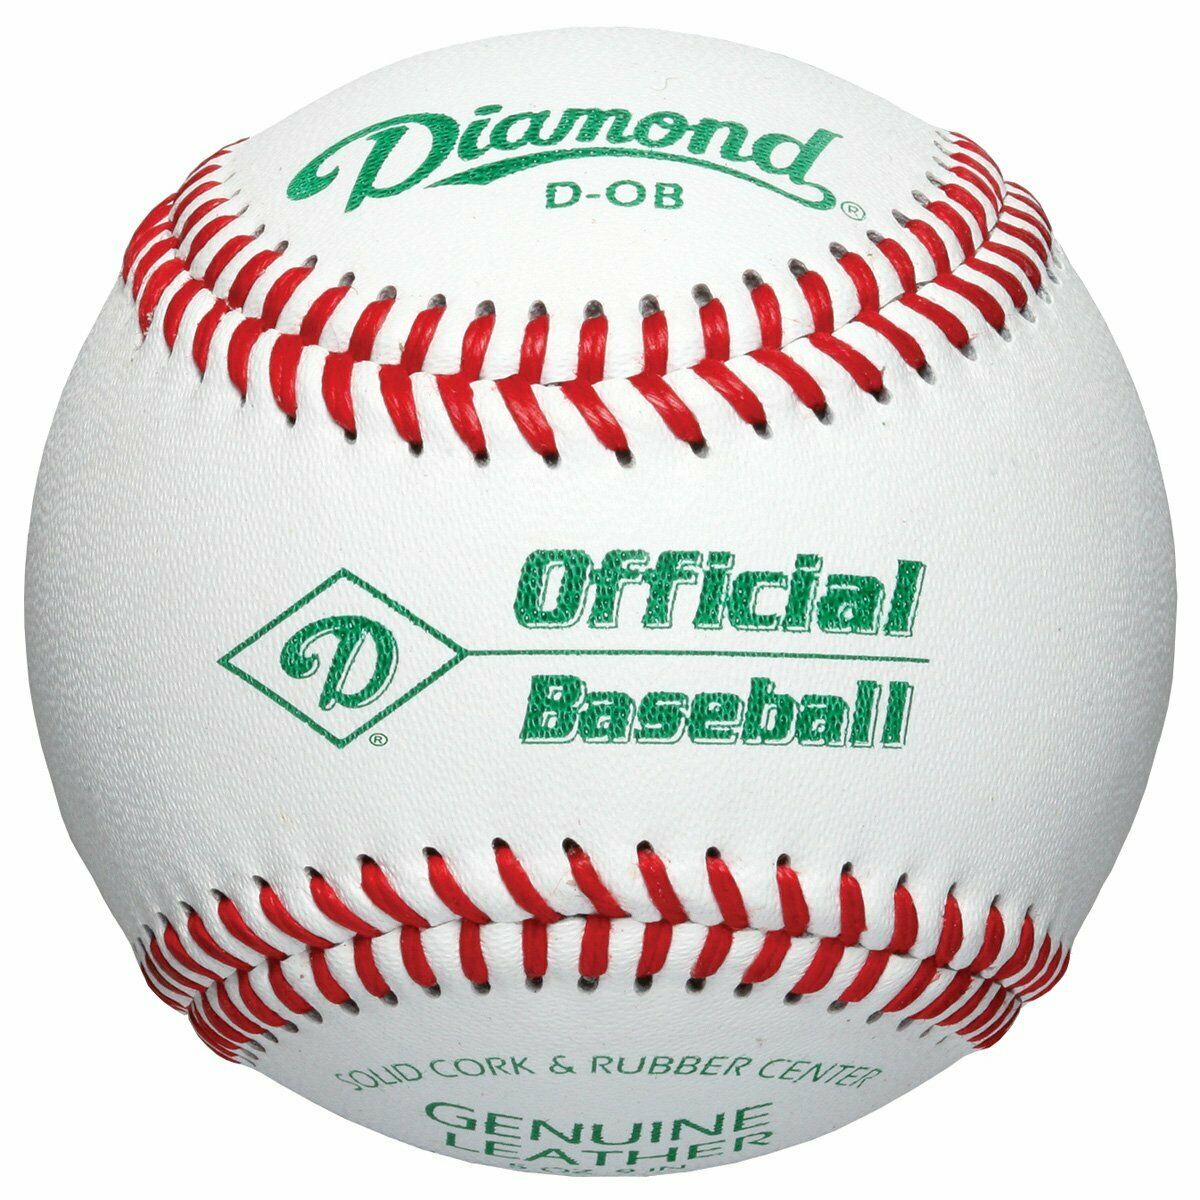 Deportes Diamante | D-OB | Cuero con costura de diamante oficial de la Liga | 1 docena de bolas